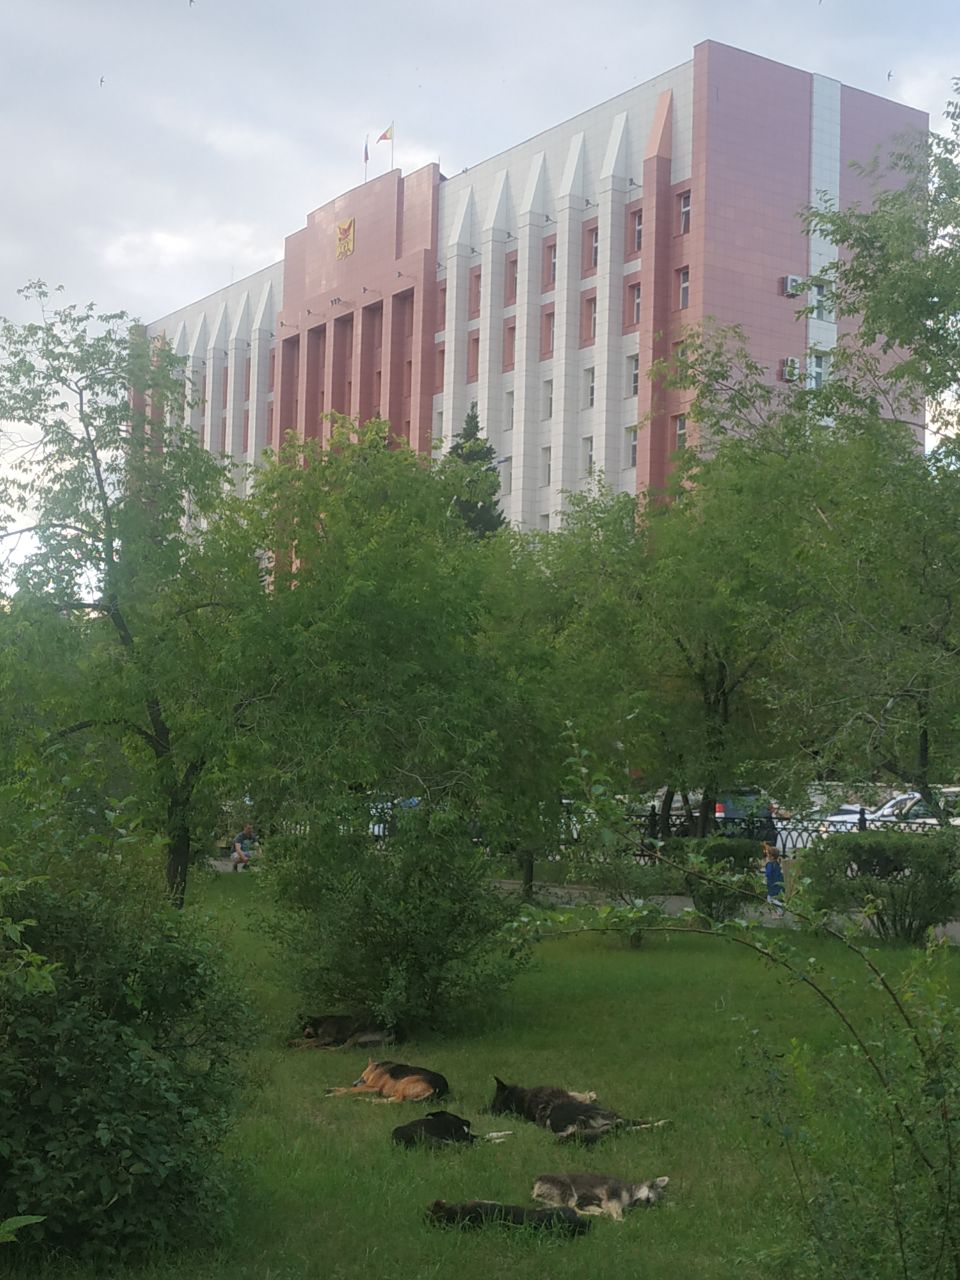 Бродячие собаки второй год подряд занимают площадь в Чите перед зданием правительства